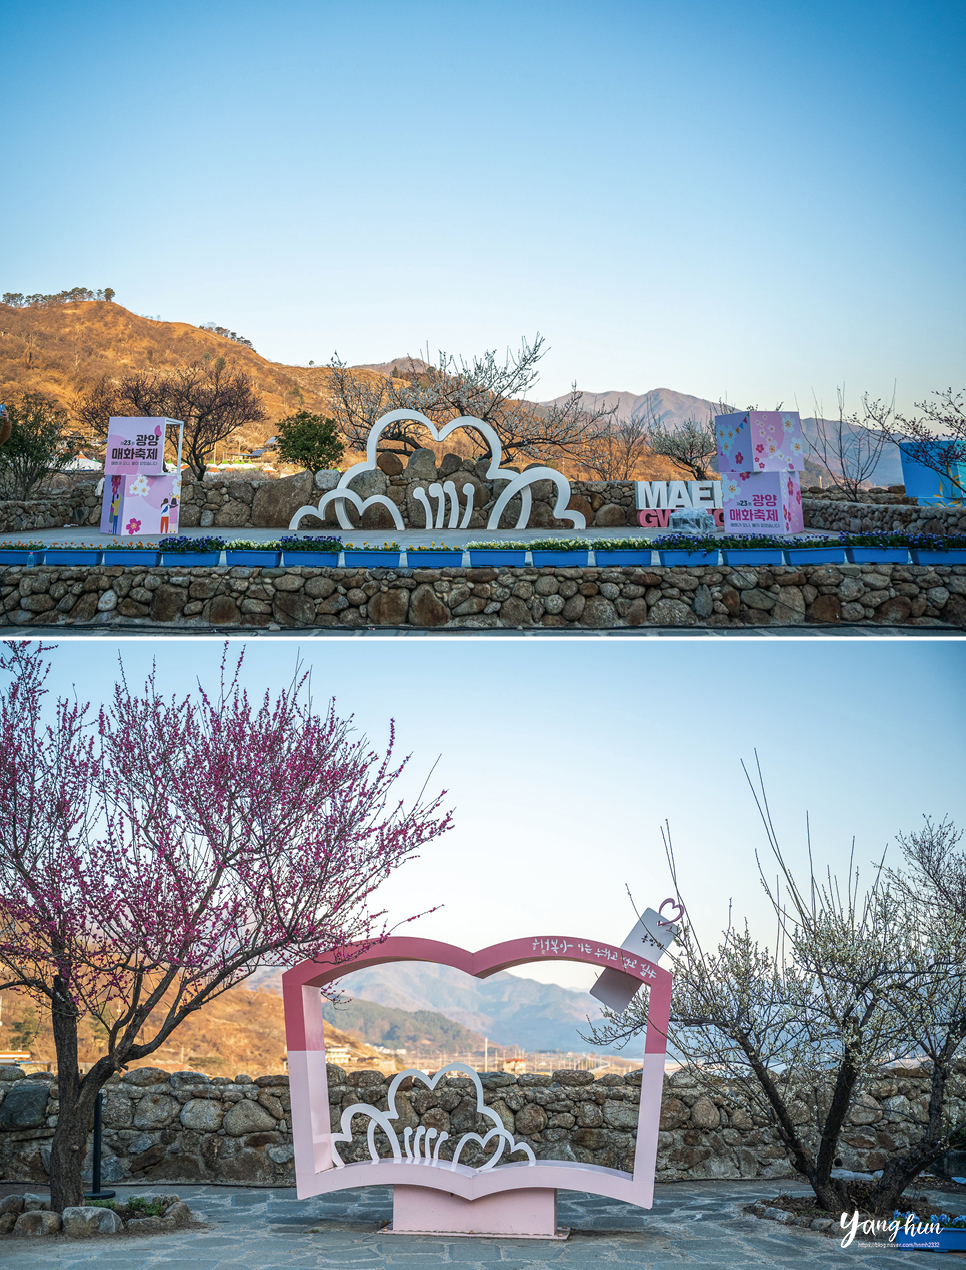 전남 광양 매화마을 매화축제 실시간 3월 10일 주차장 요금 정보